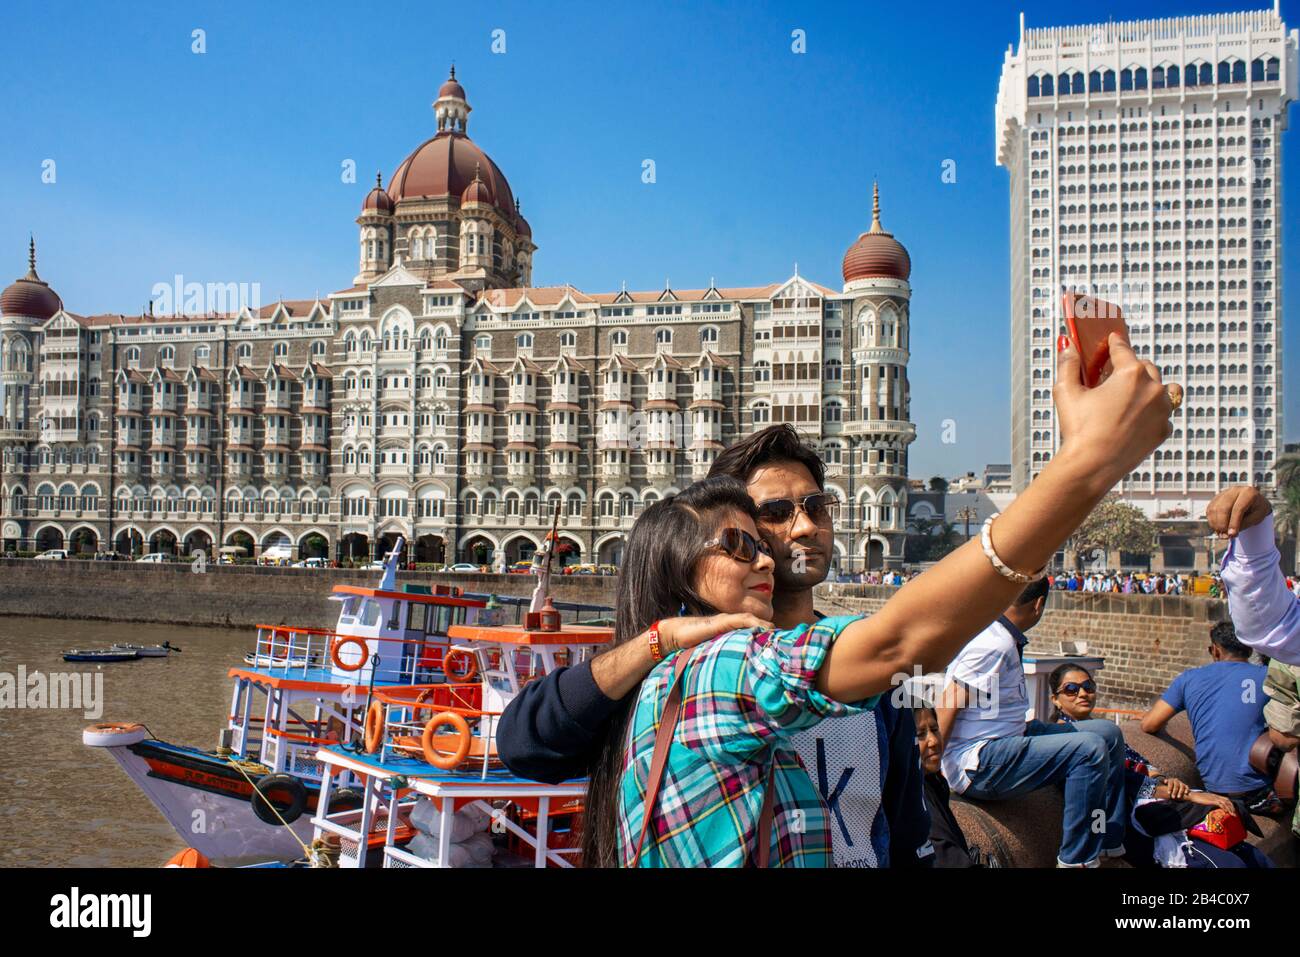 The Taj Mahal Intercontinental Hotel and the Gateway to India, Mumbai, previously called Bombay, Maharashtra State, India Stock Photo